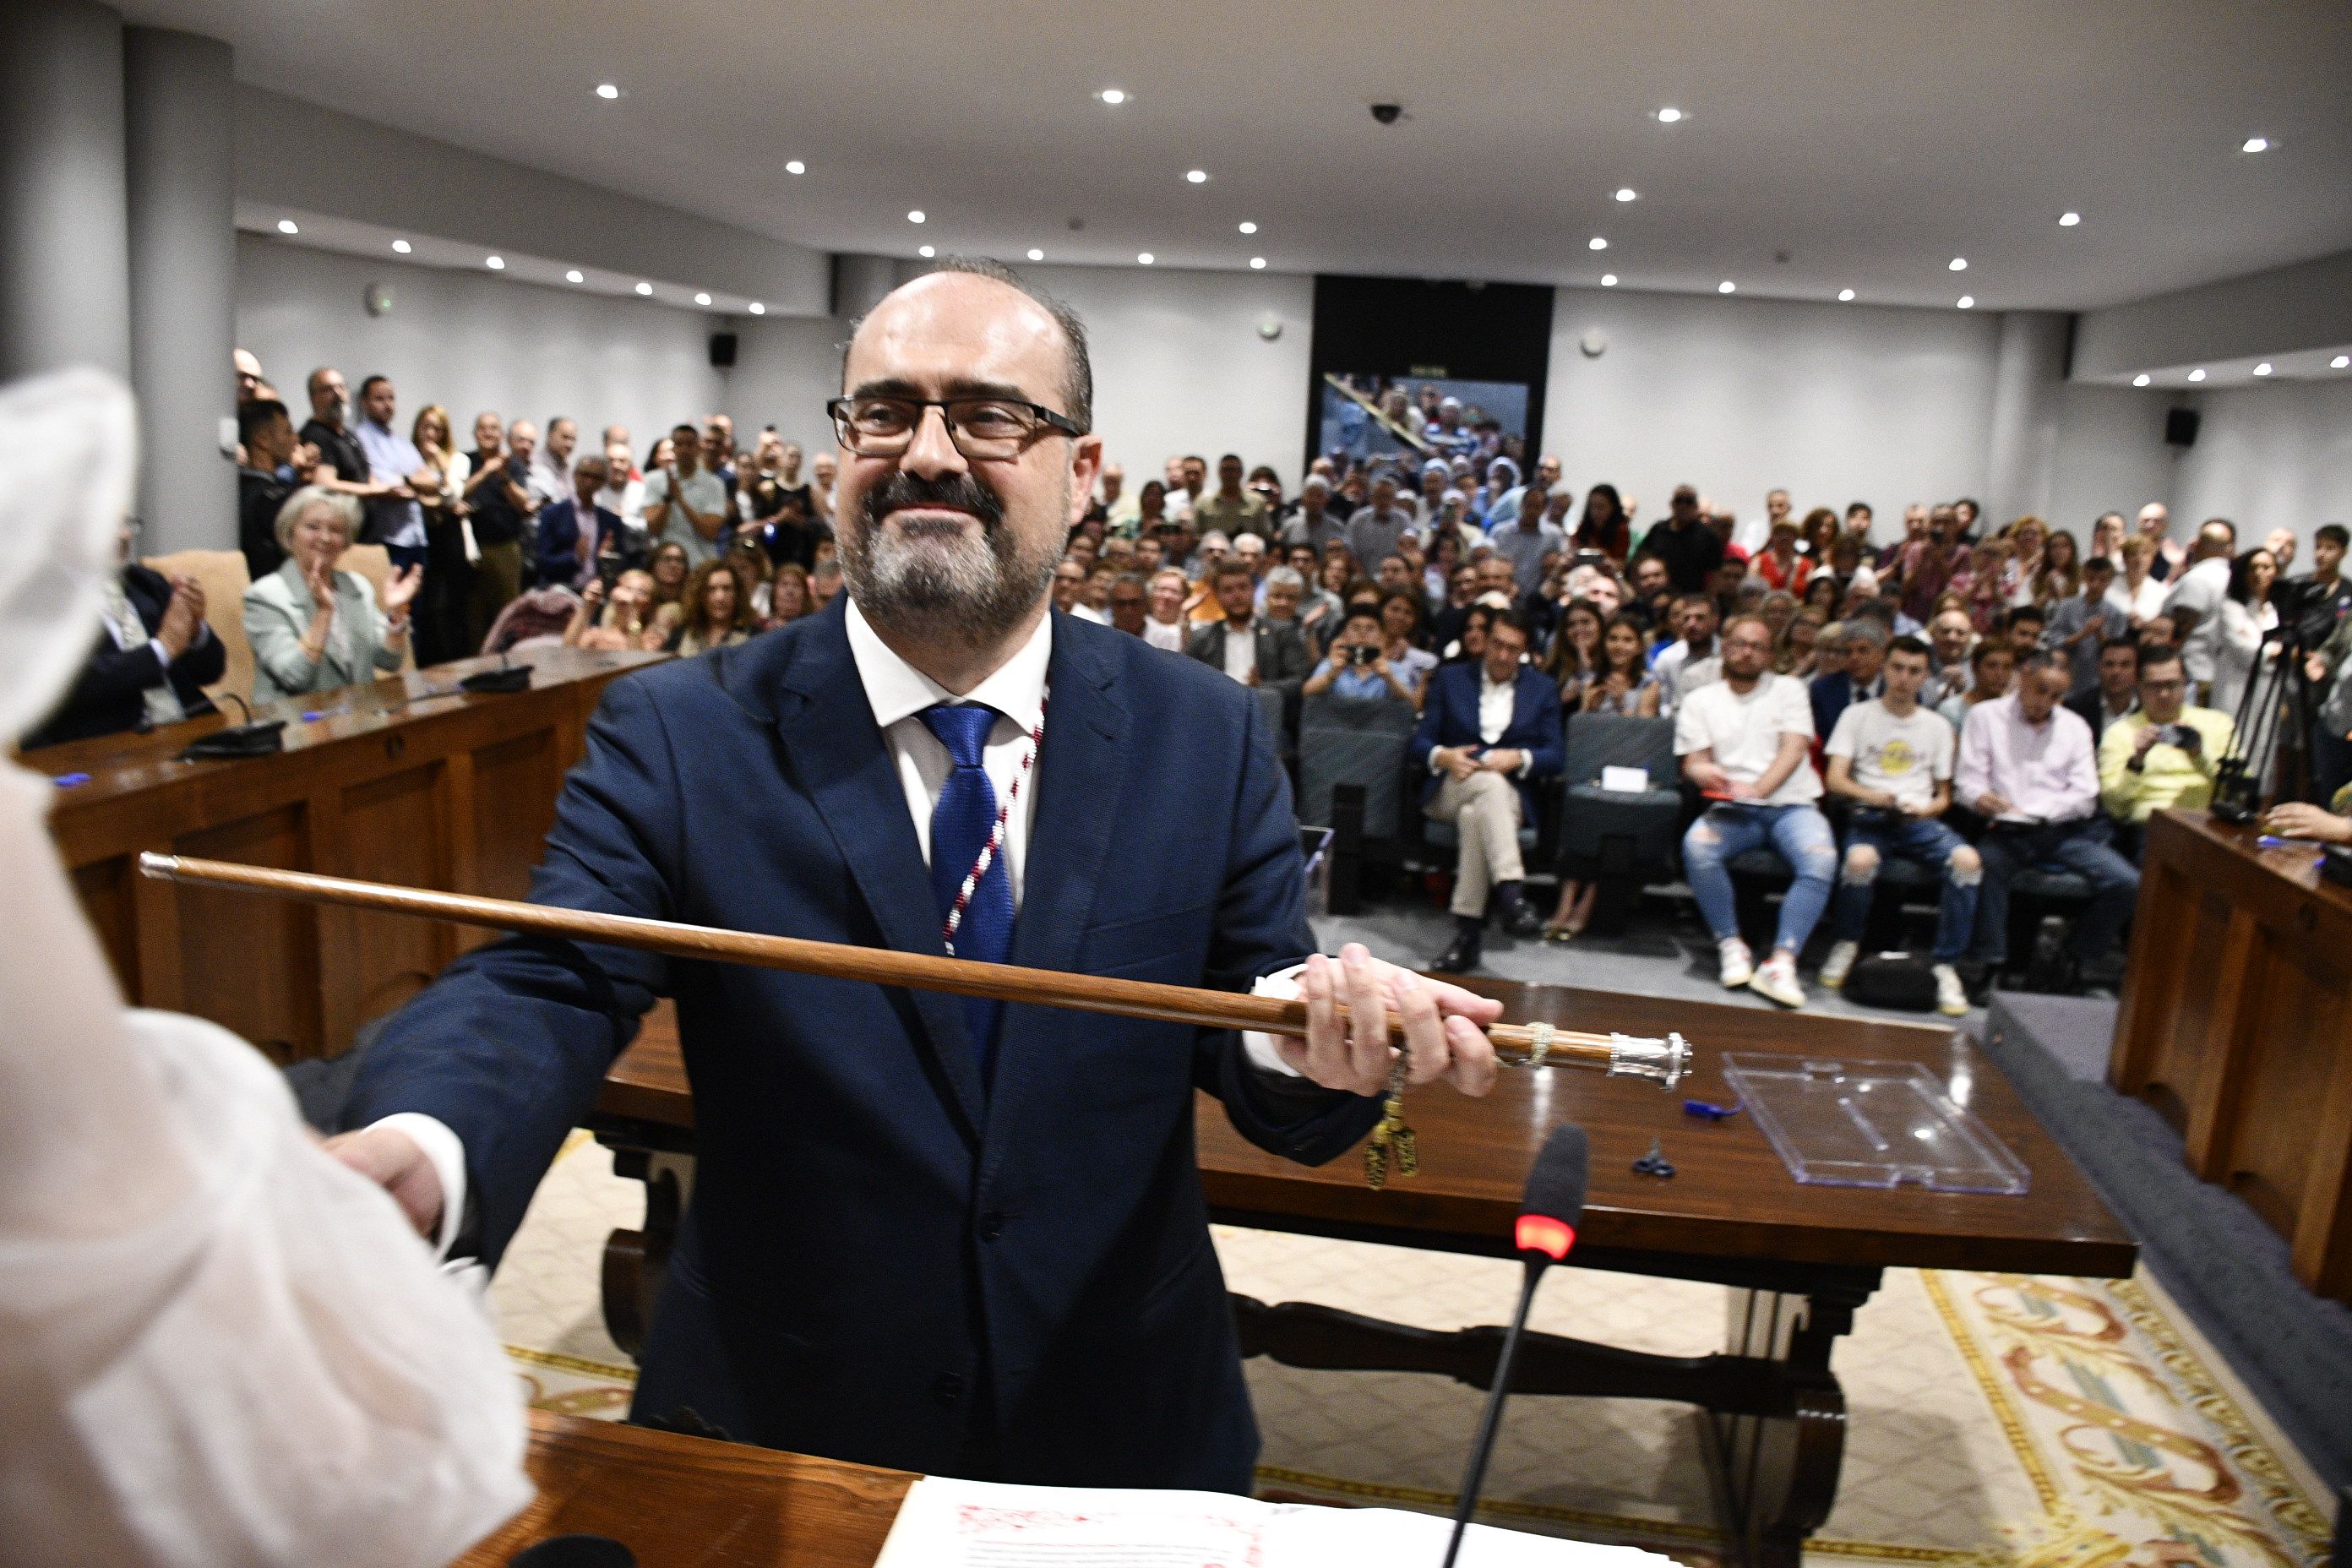 Marco Morala nuevo alcalde de Ponferrada. Sesión plenaria (31)